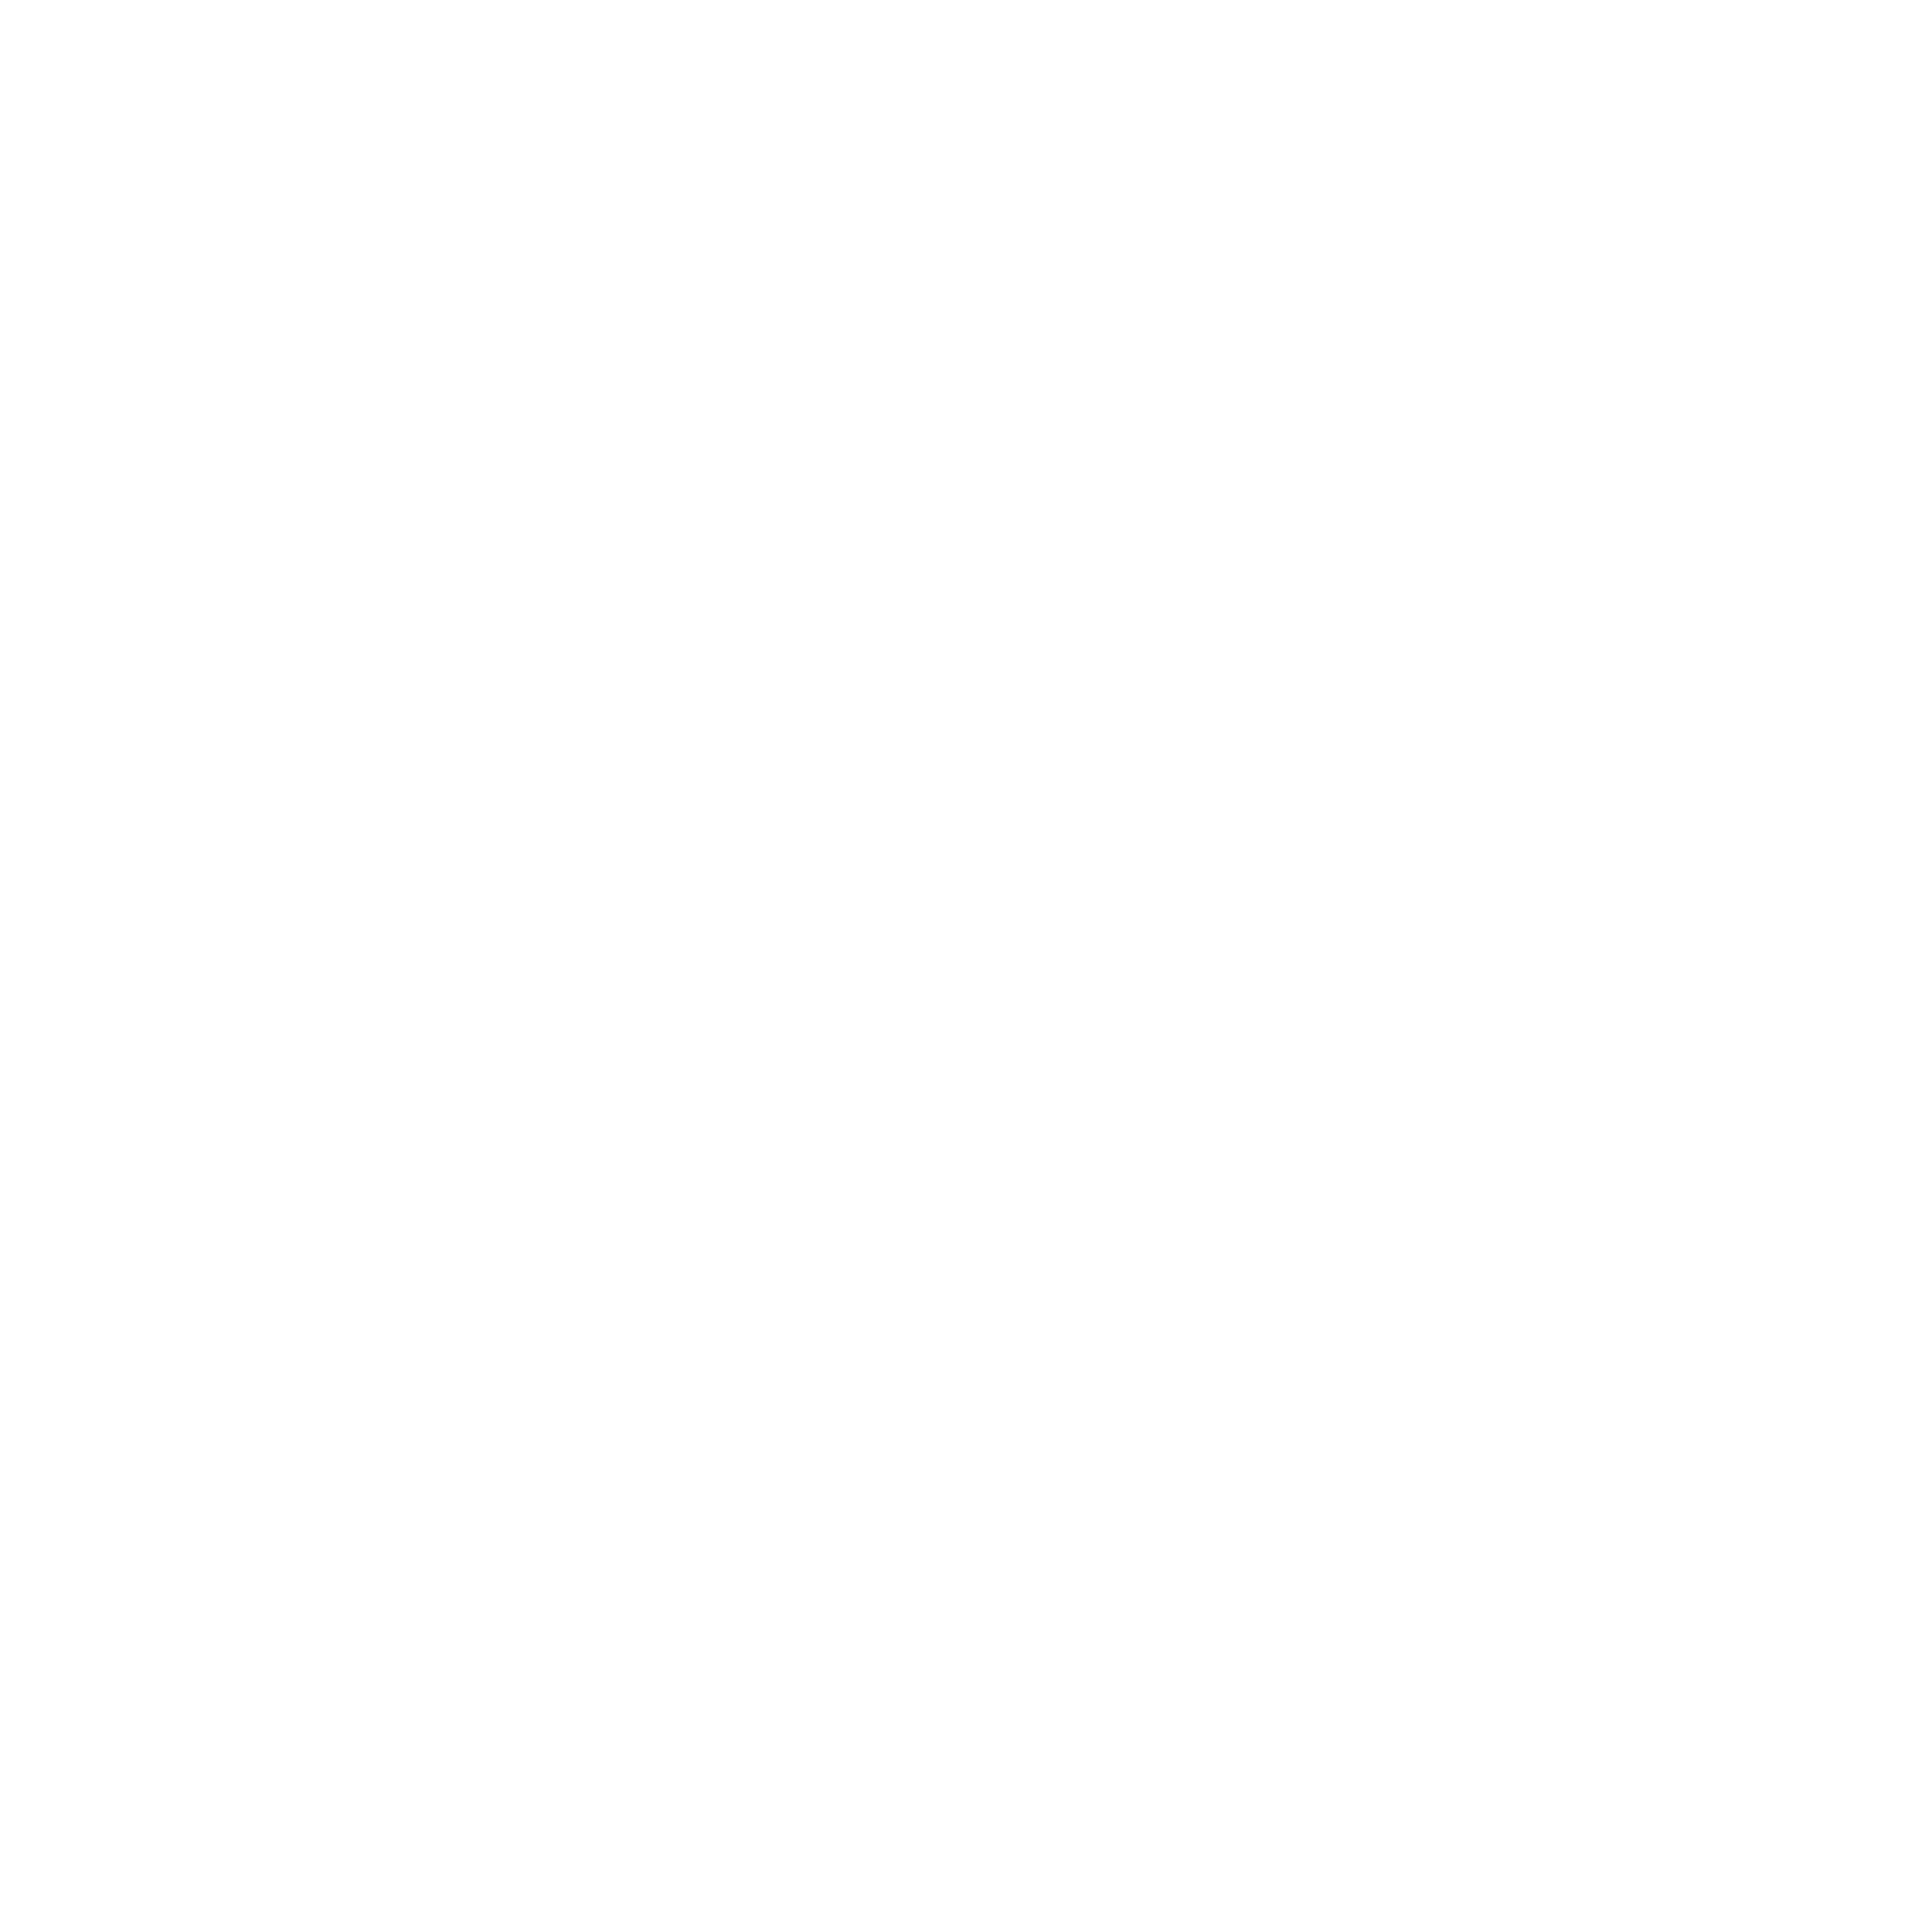 roaster ReAnimator's logo